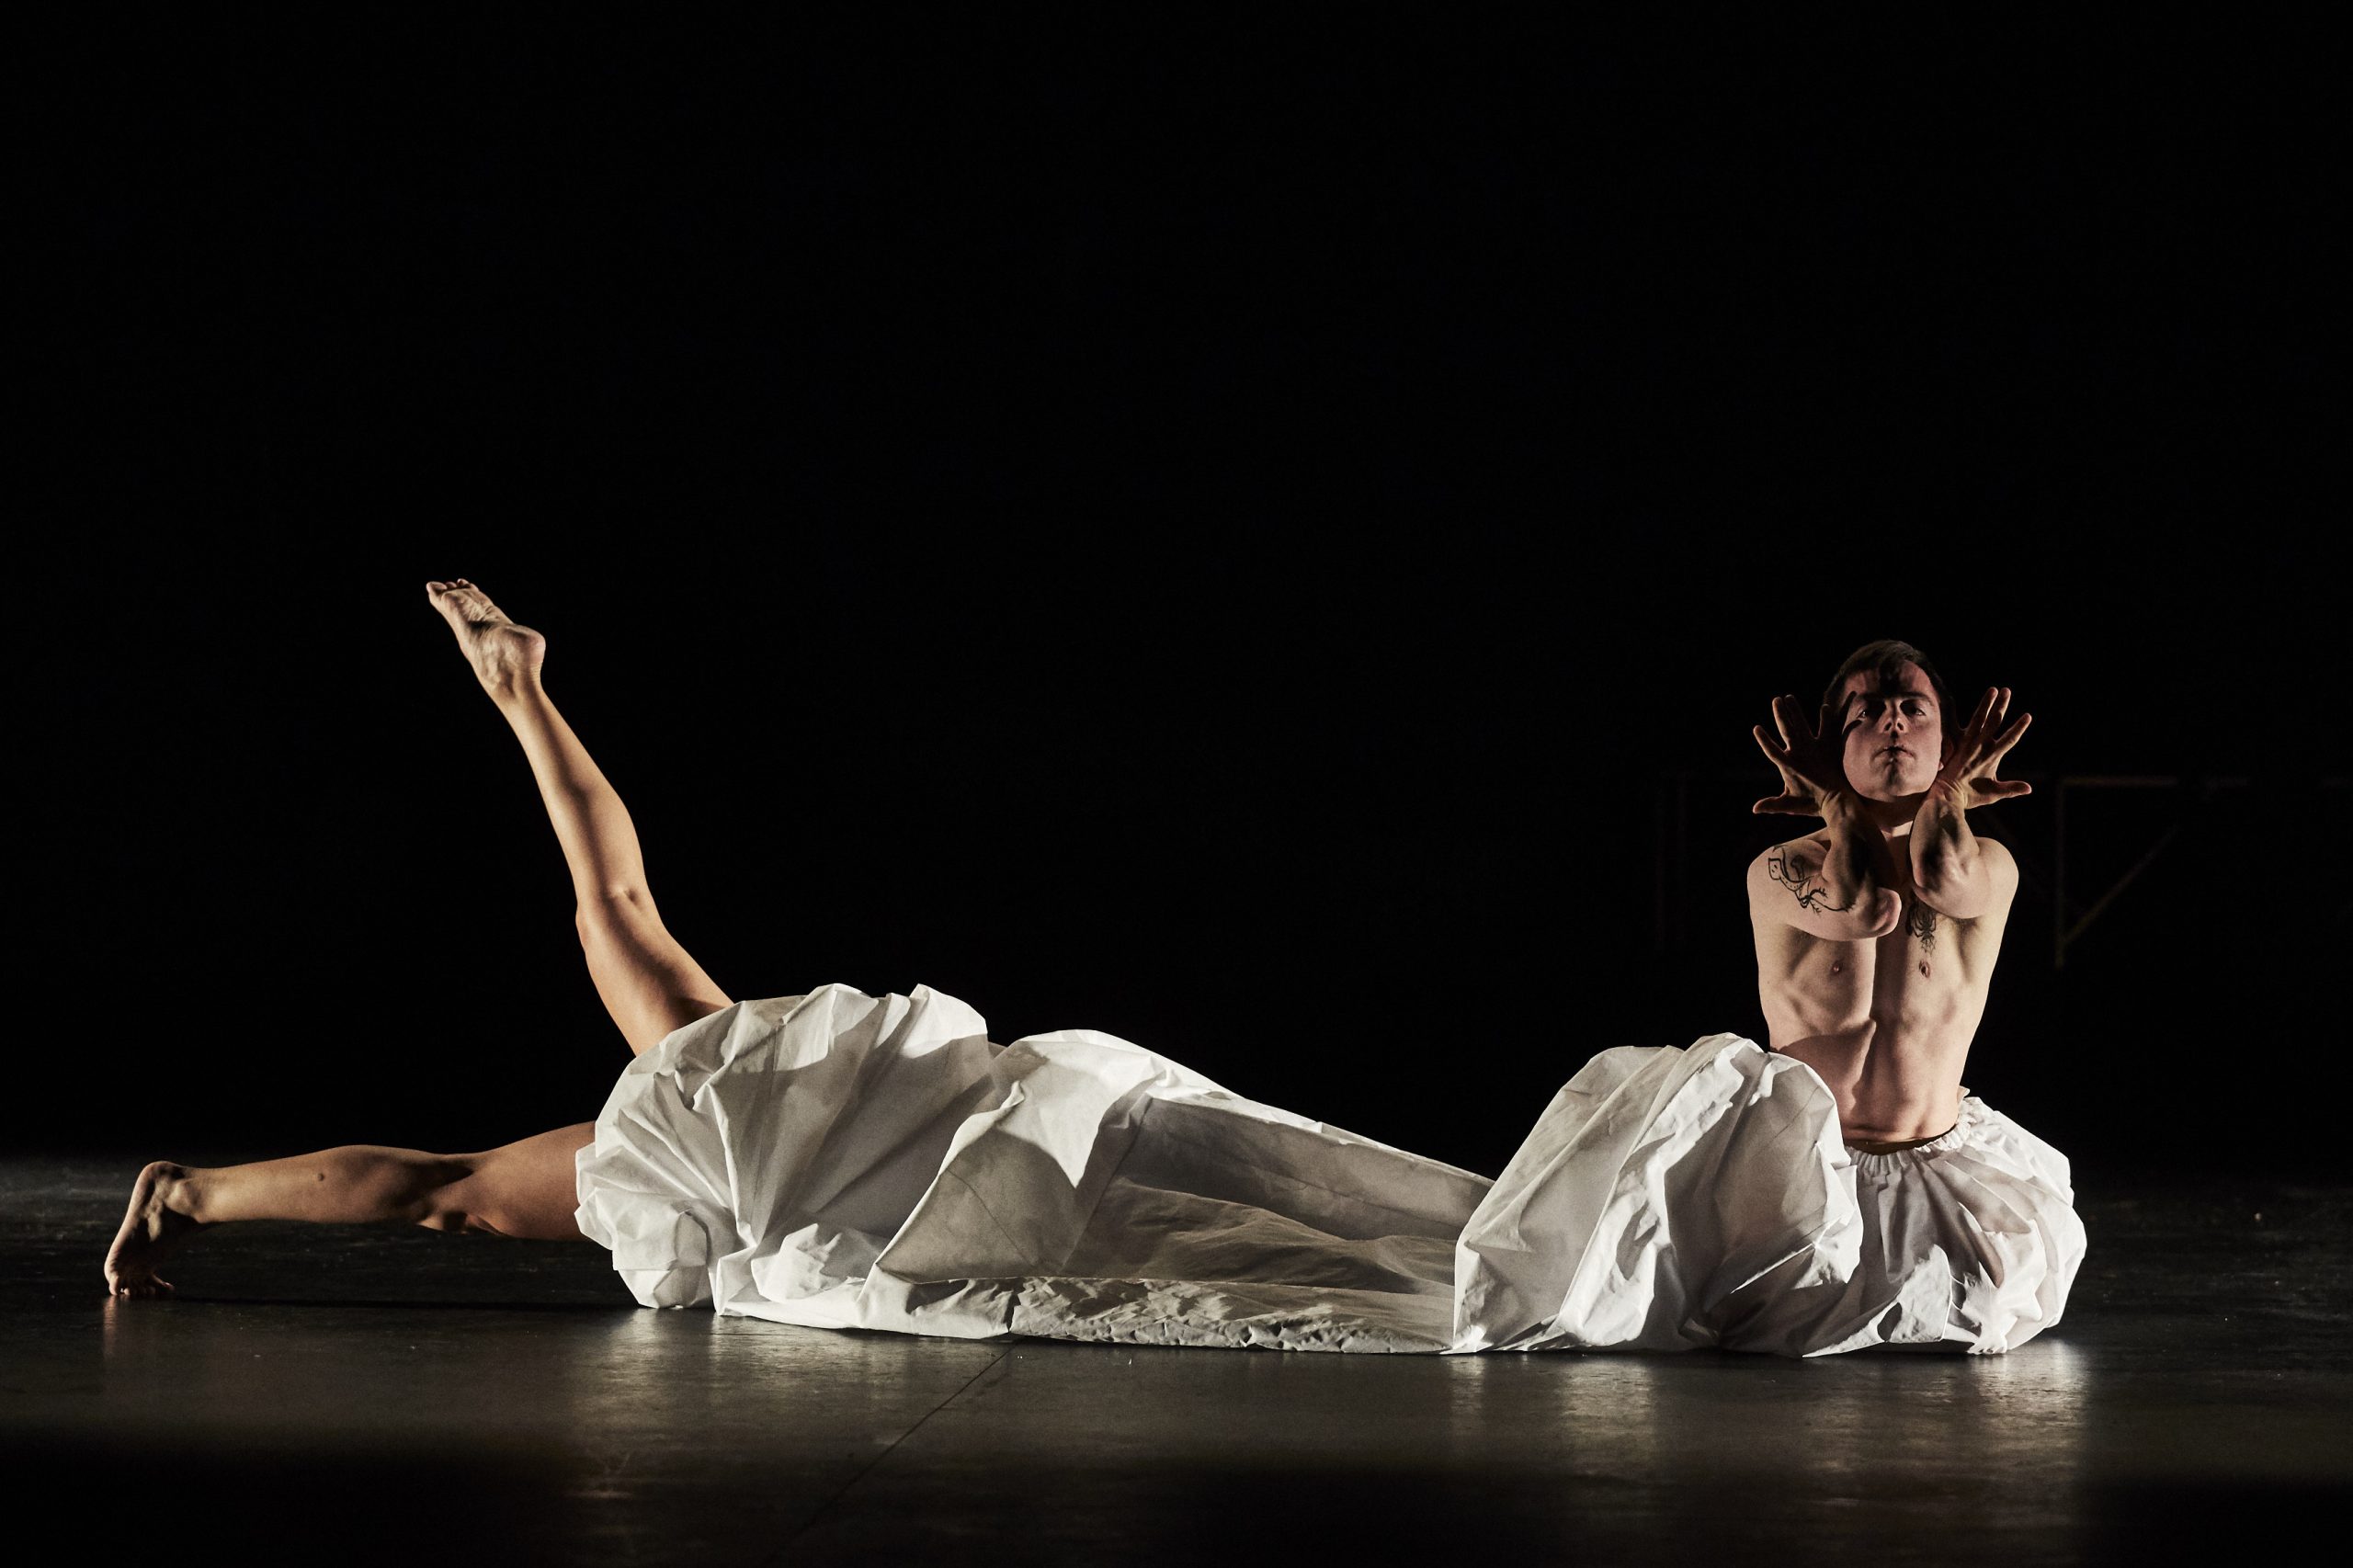 En el escenario dos bailarines y un edredón blanco que tapa el cuerpo de un bailarín tumbado y solo se le ven las piernas